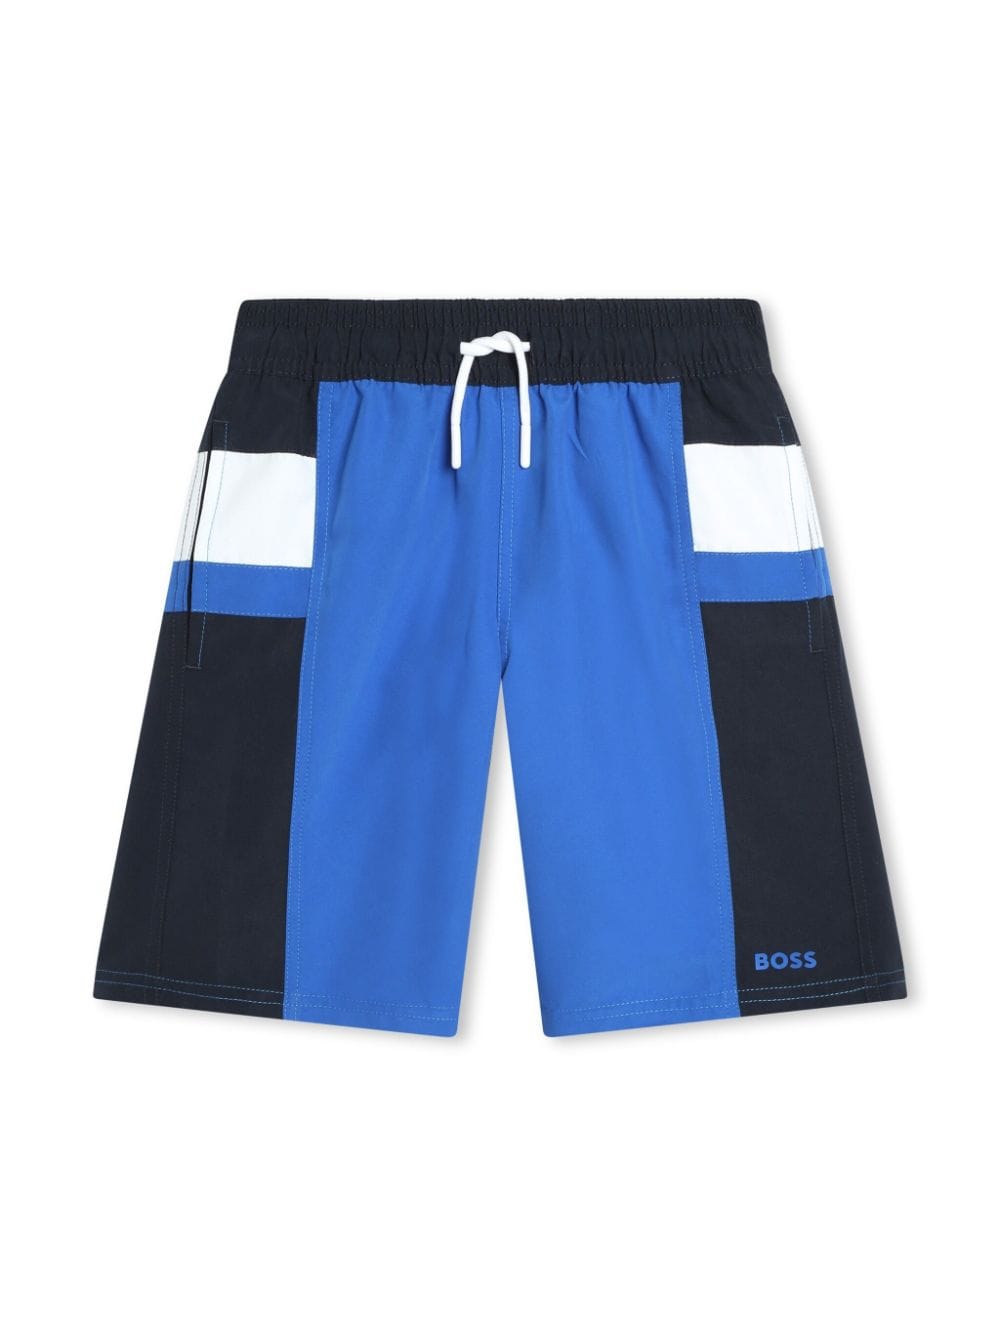 Bosswear Kids' Colour-block Swim Shorts In Blue